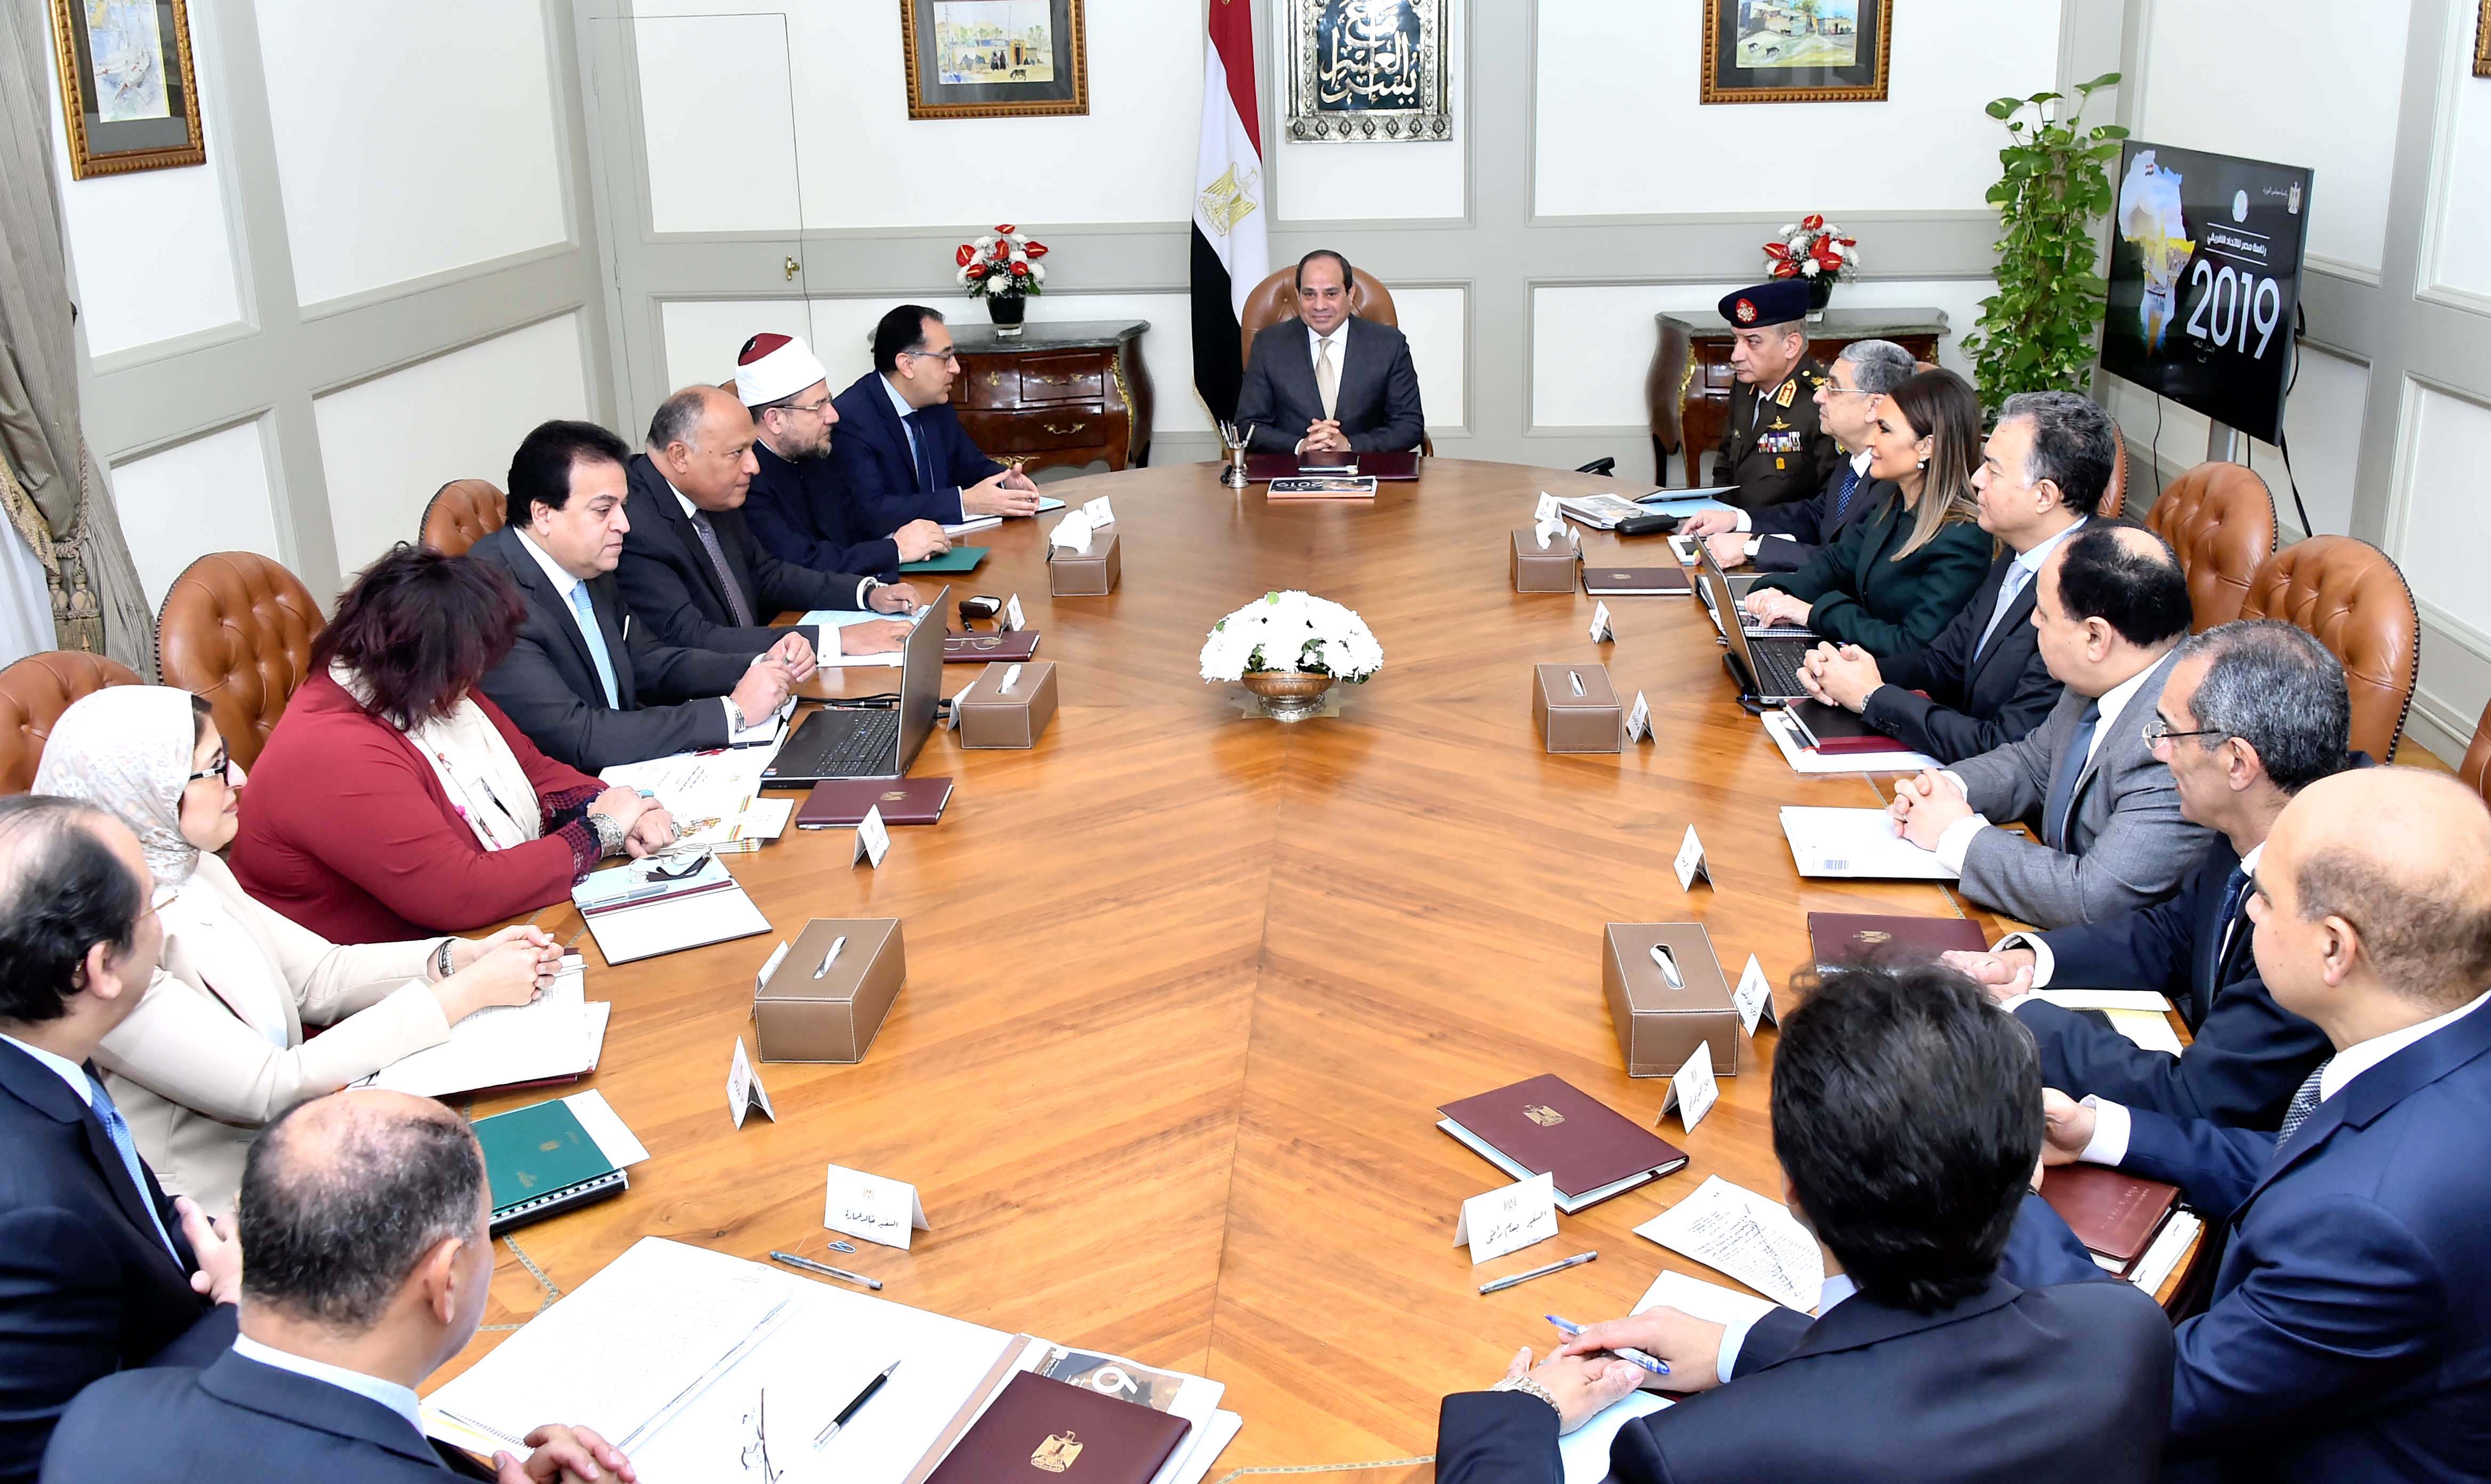 السيد الرئيس يجتمع مع السيد رئيس مجلس الوزراء وعدد من السادة الوزراء والمسئولين